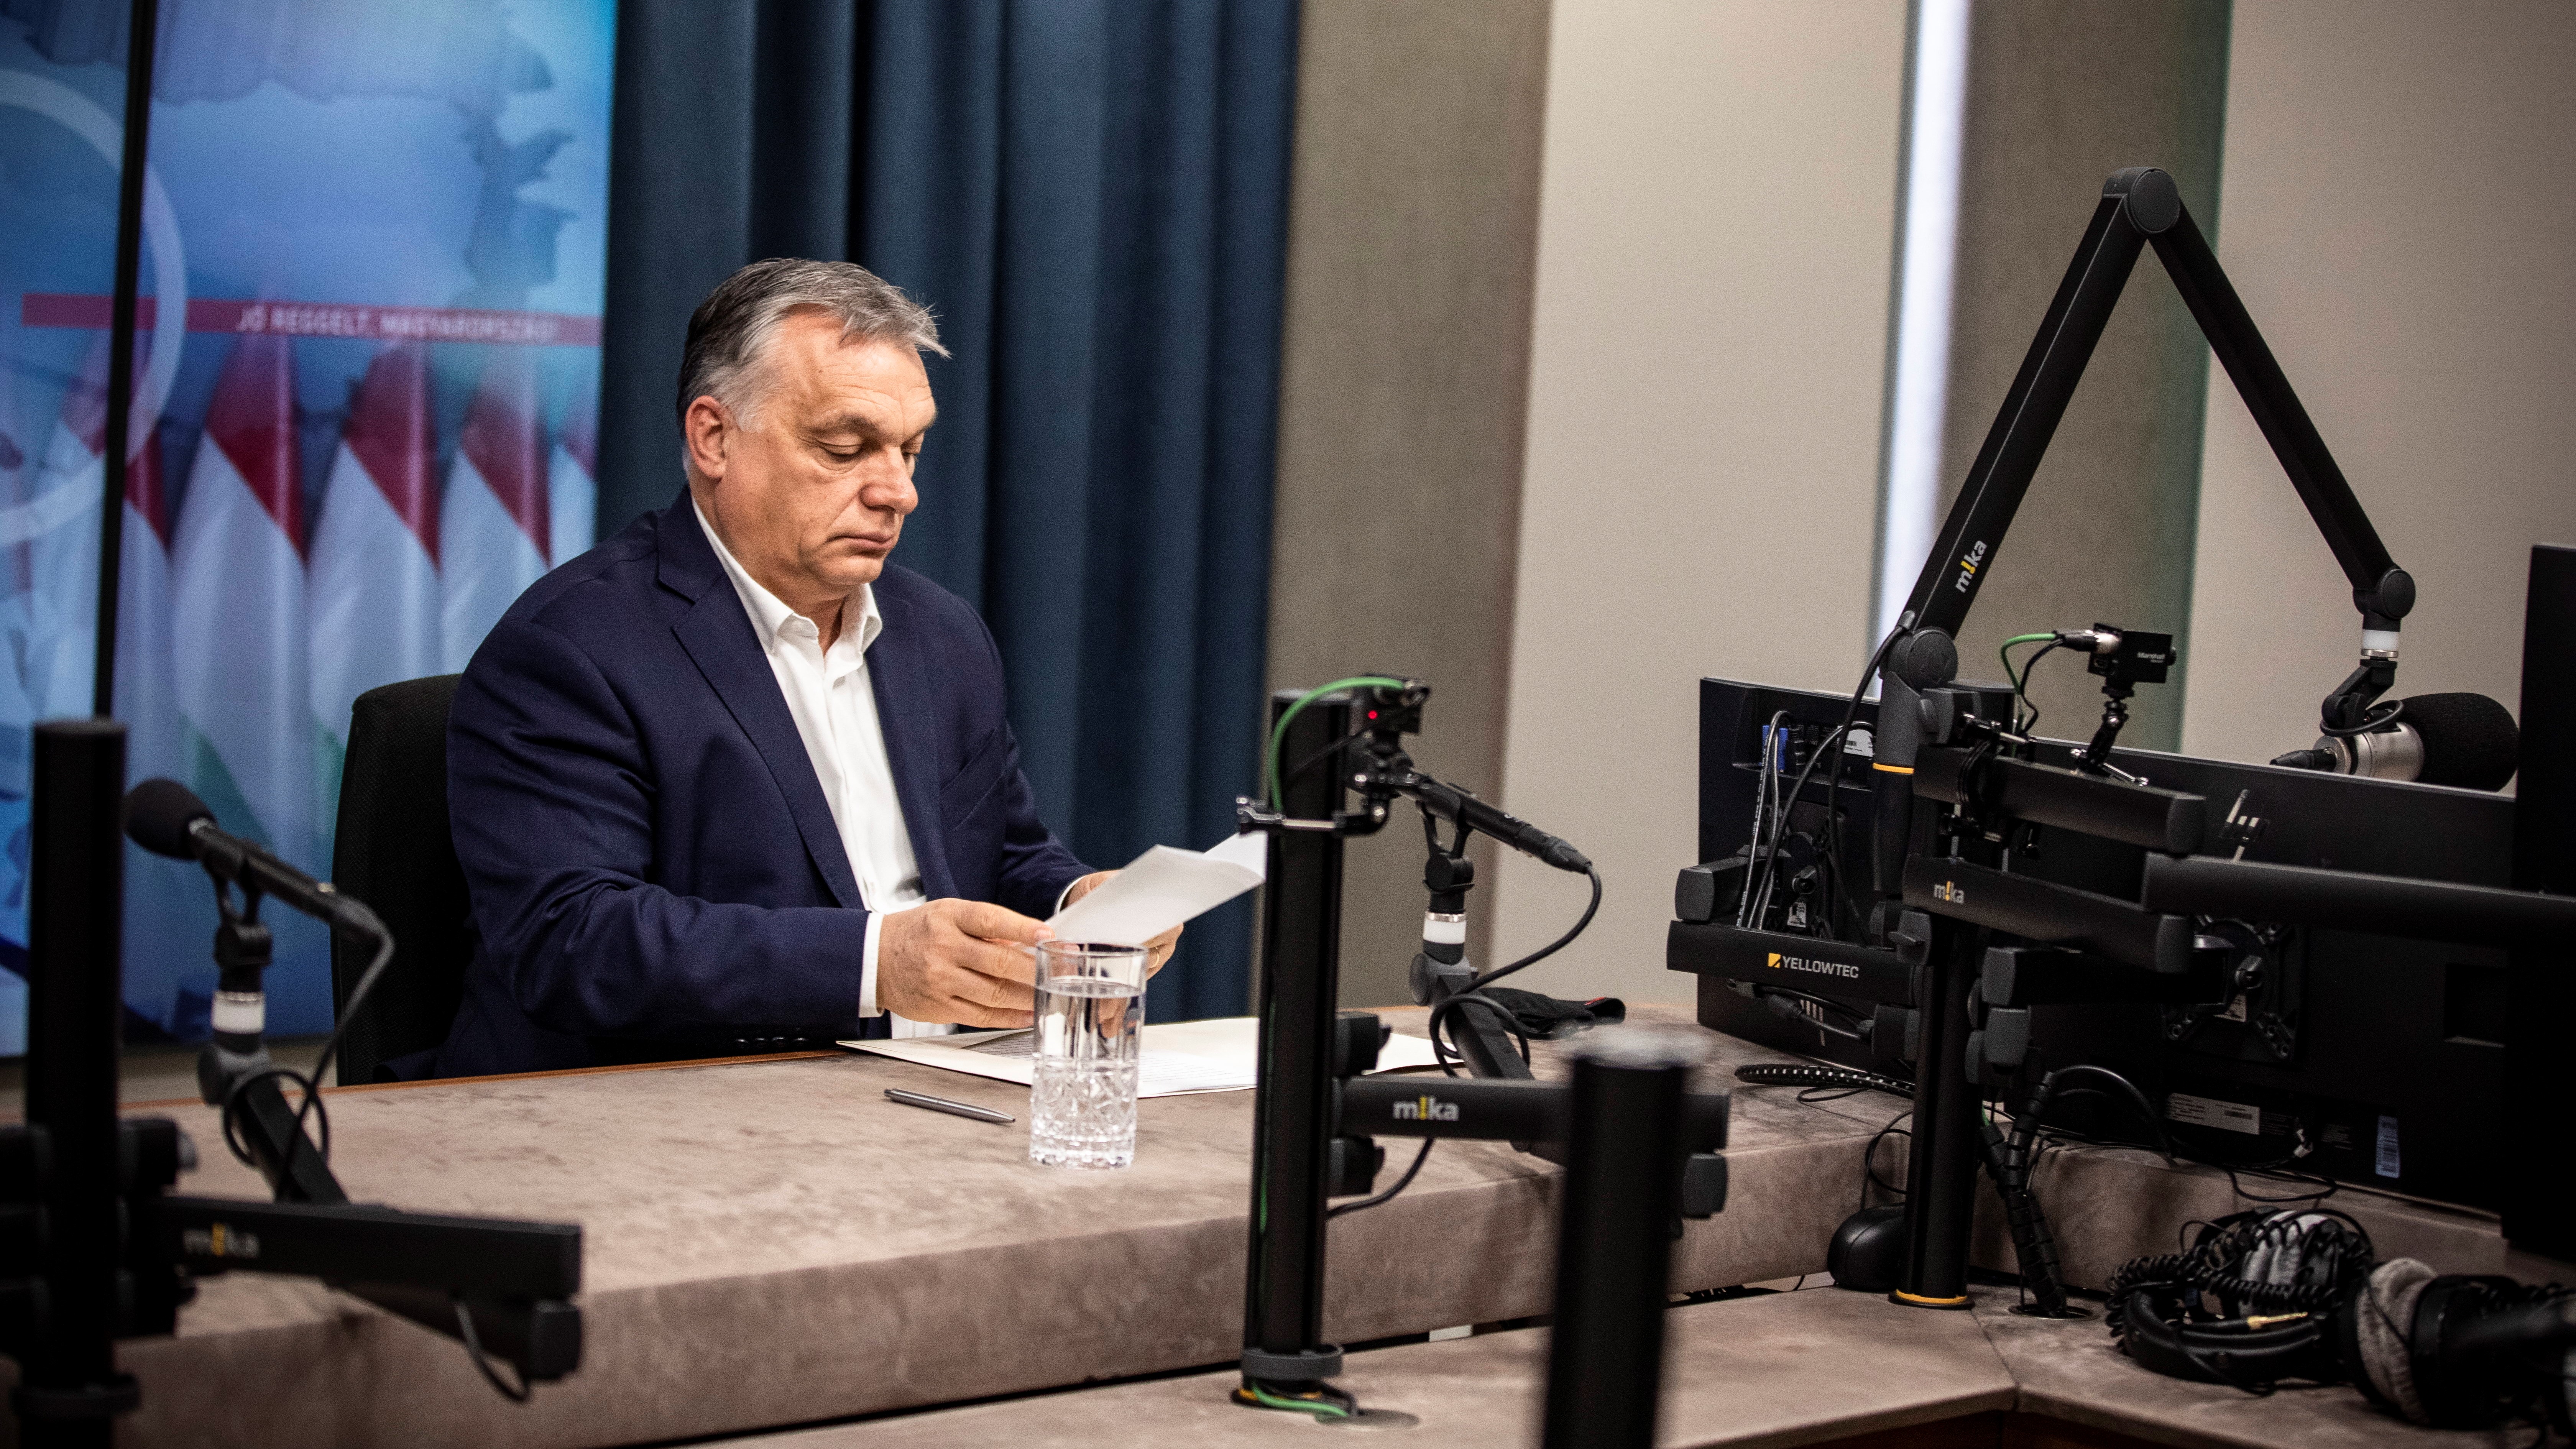 A Miniszterelnöki Sajtóiroda által közreadott képen Orbán Viktor kormányfő a Kossuth Rádió stúdiójában, ahol interjút adott a Jó reggelt, Magyarország! című műsorban 2021. március 5-én.